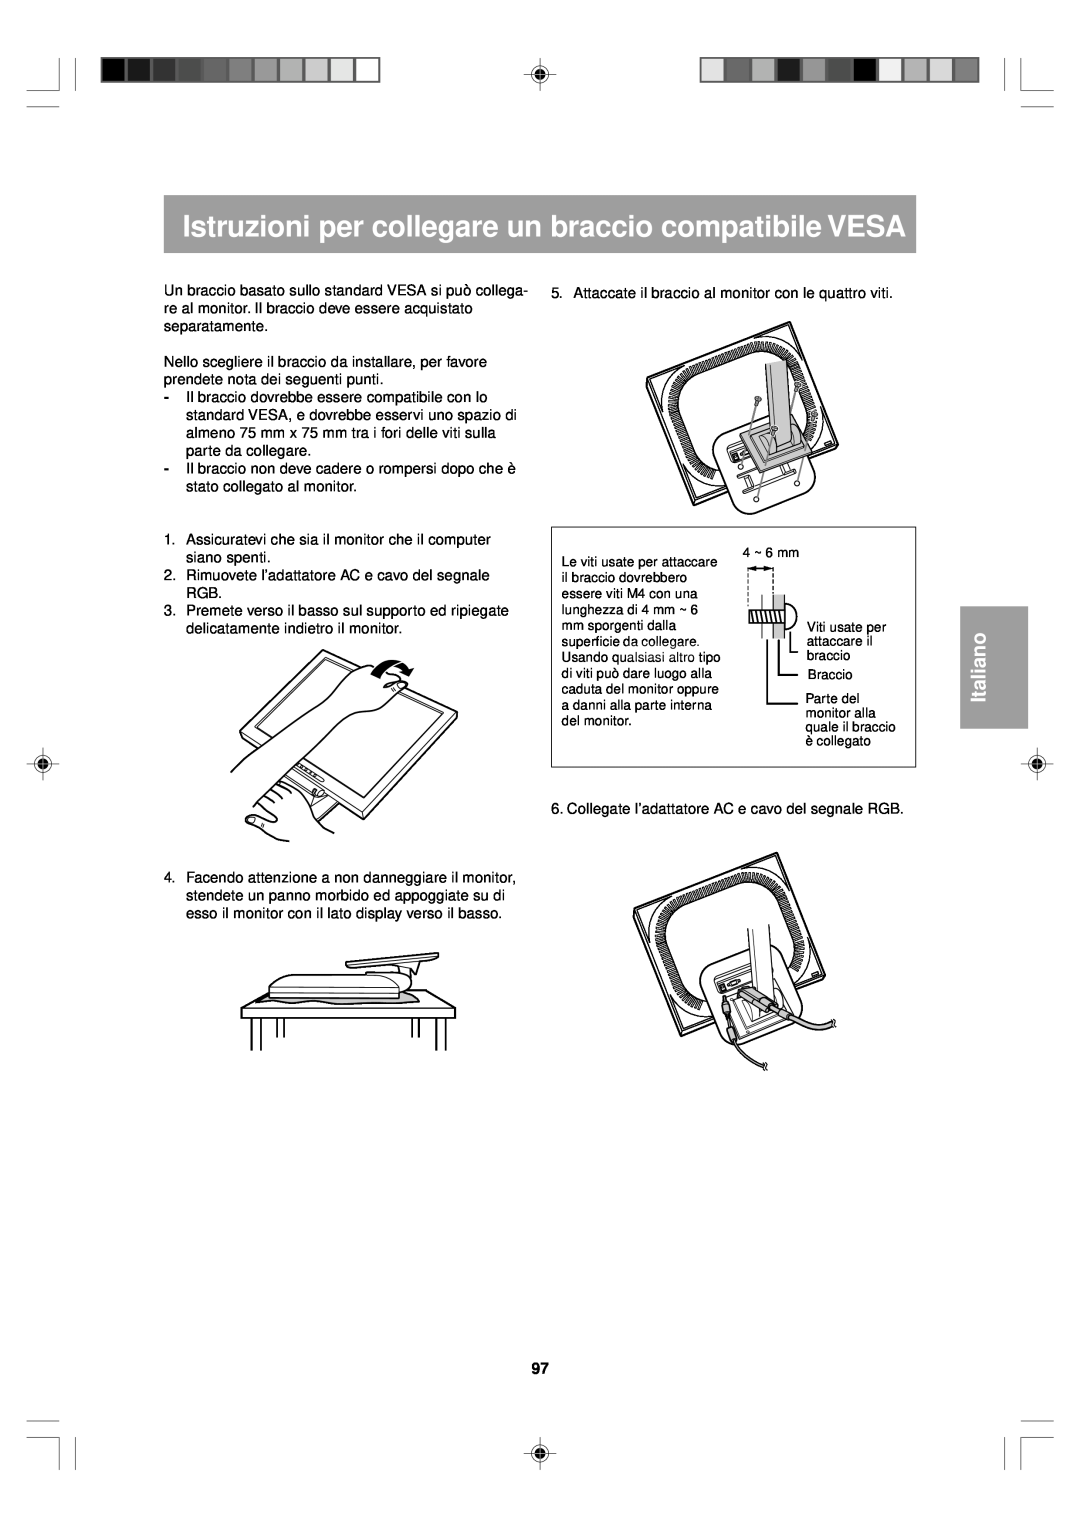 Sharp LL-T15V1 operation manual Istruzioni per collegare un braccio compatibile VESA, Italiano 